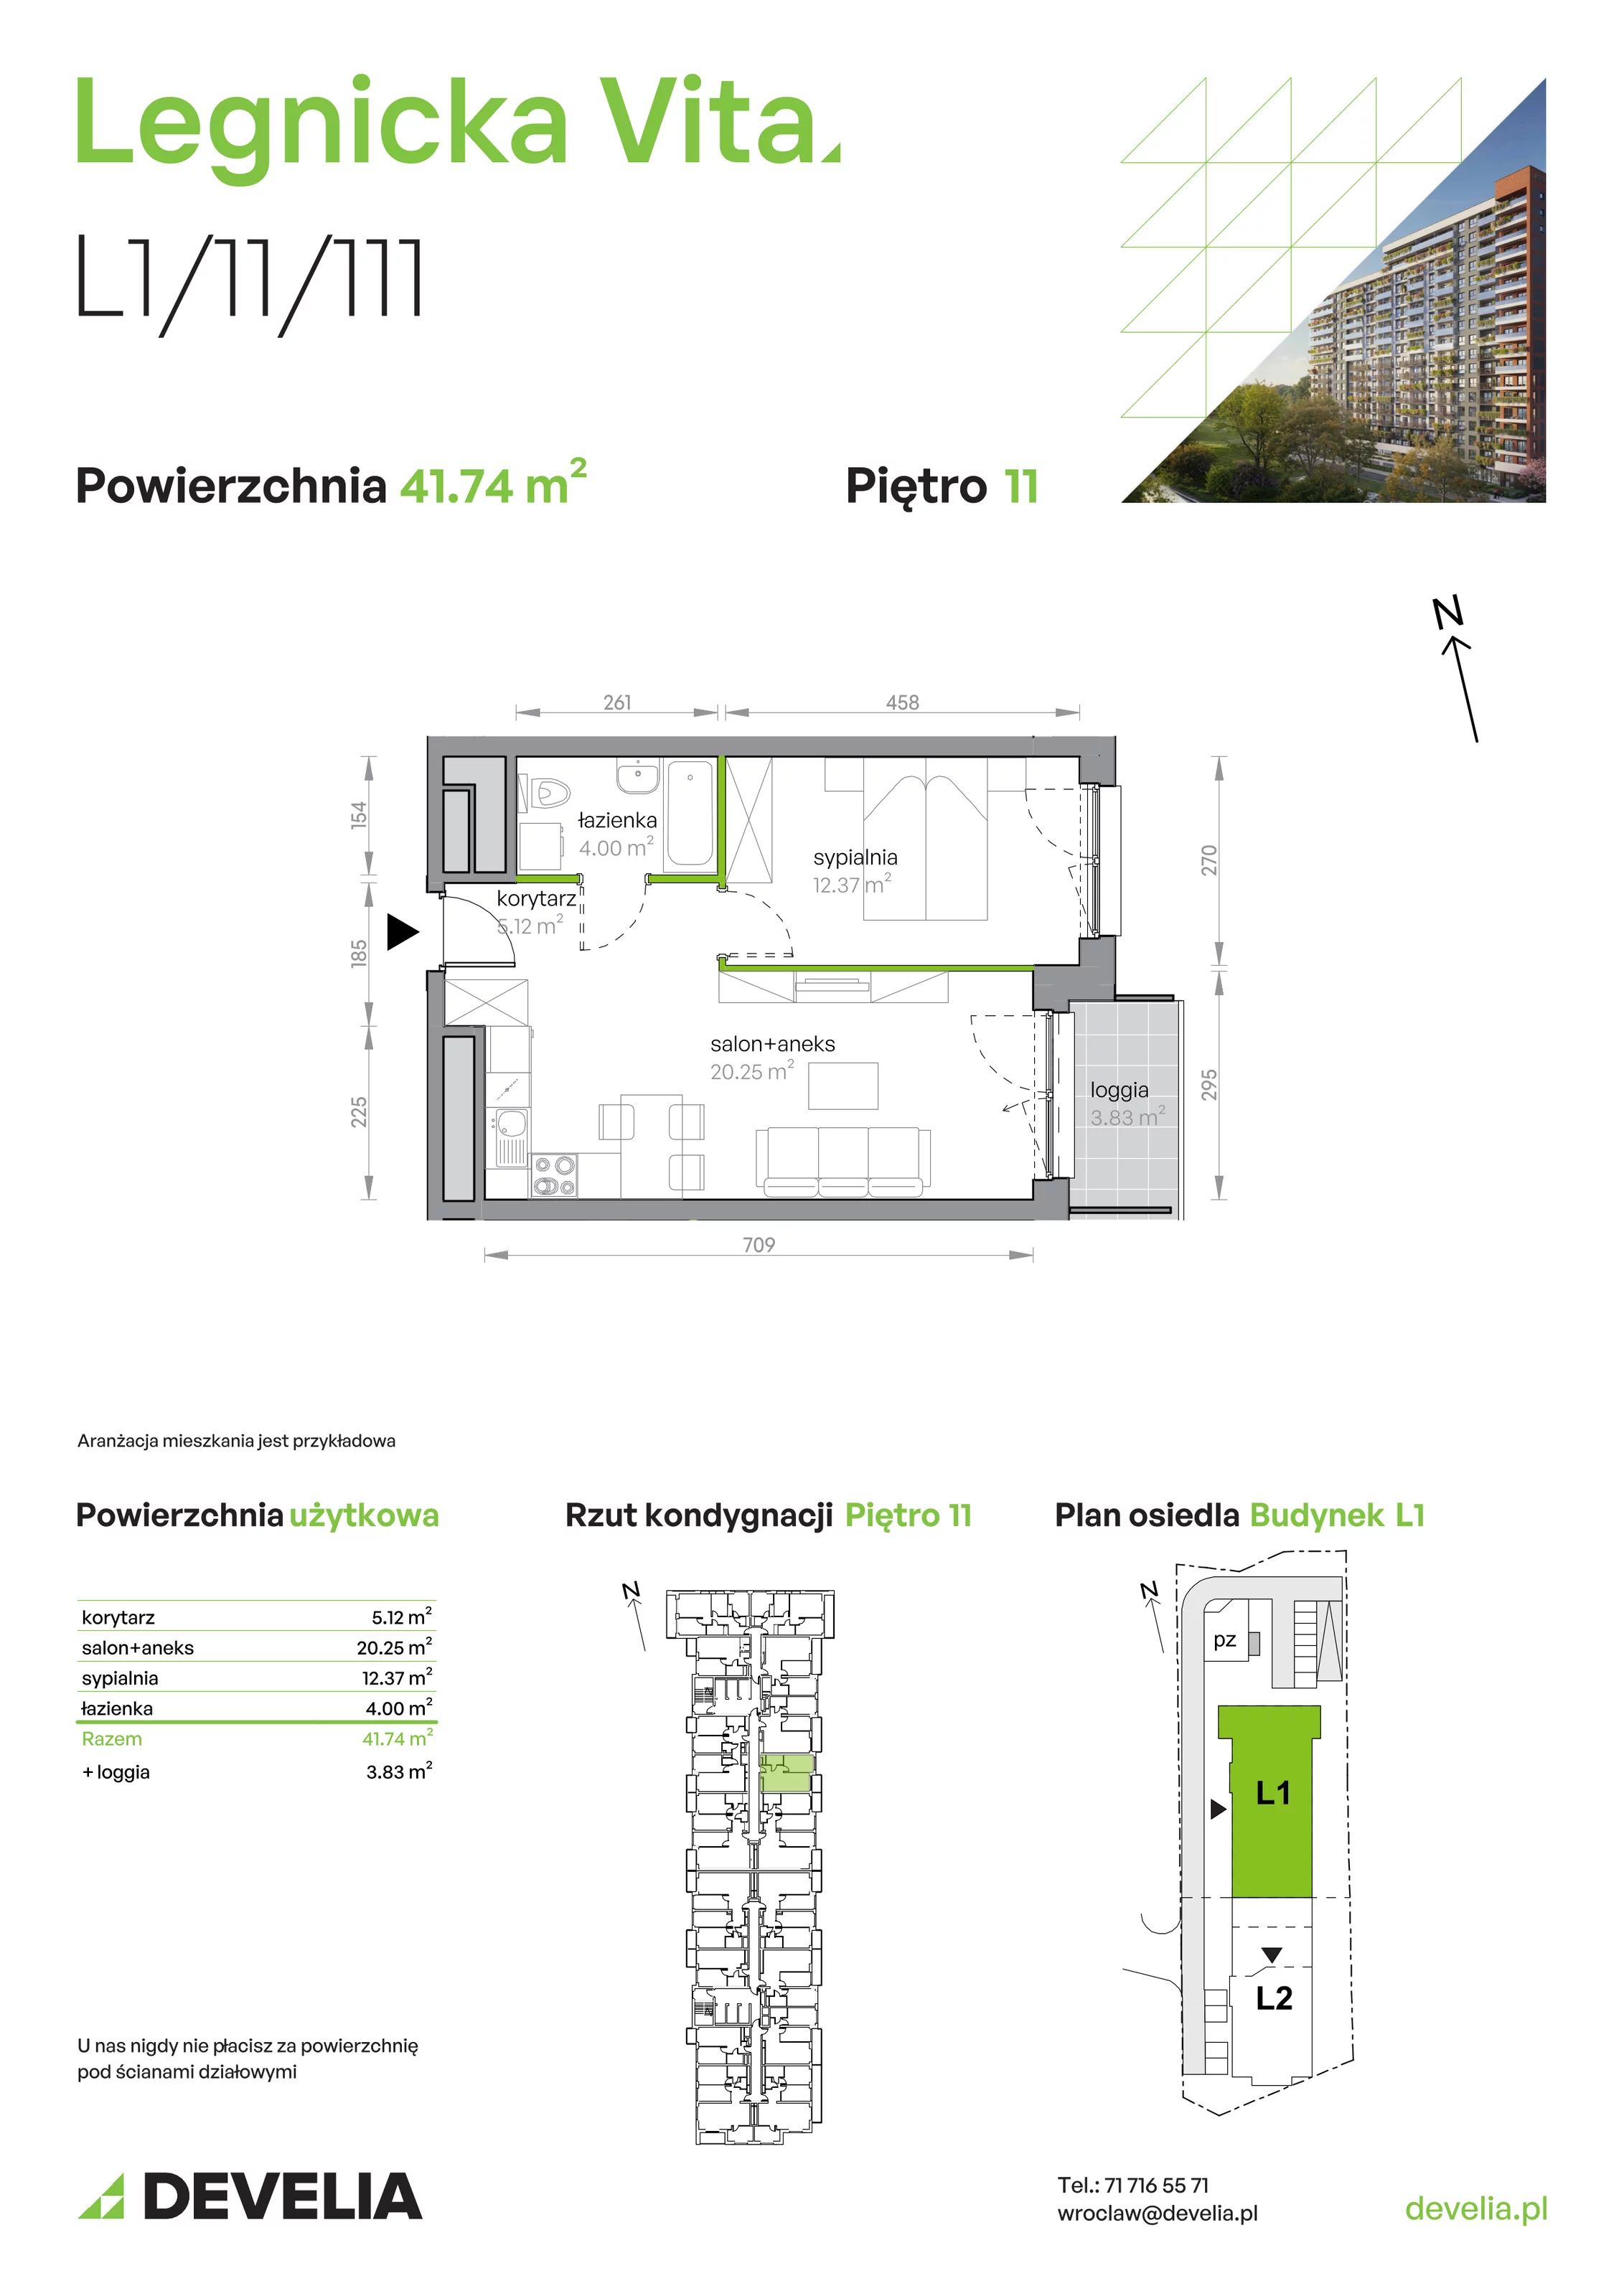 Mieszkanie 41,74 m², piętro 11, oferta nr L1/11/111, Legnicka Vita, Wrocław, Gądów-Popowice Południowe, Popowice, ul. Legnicka 52 A